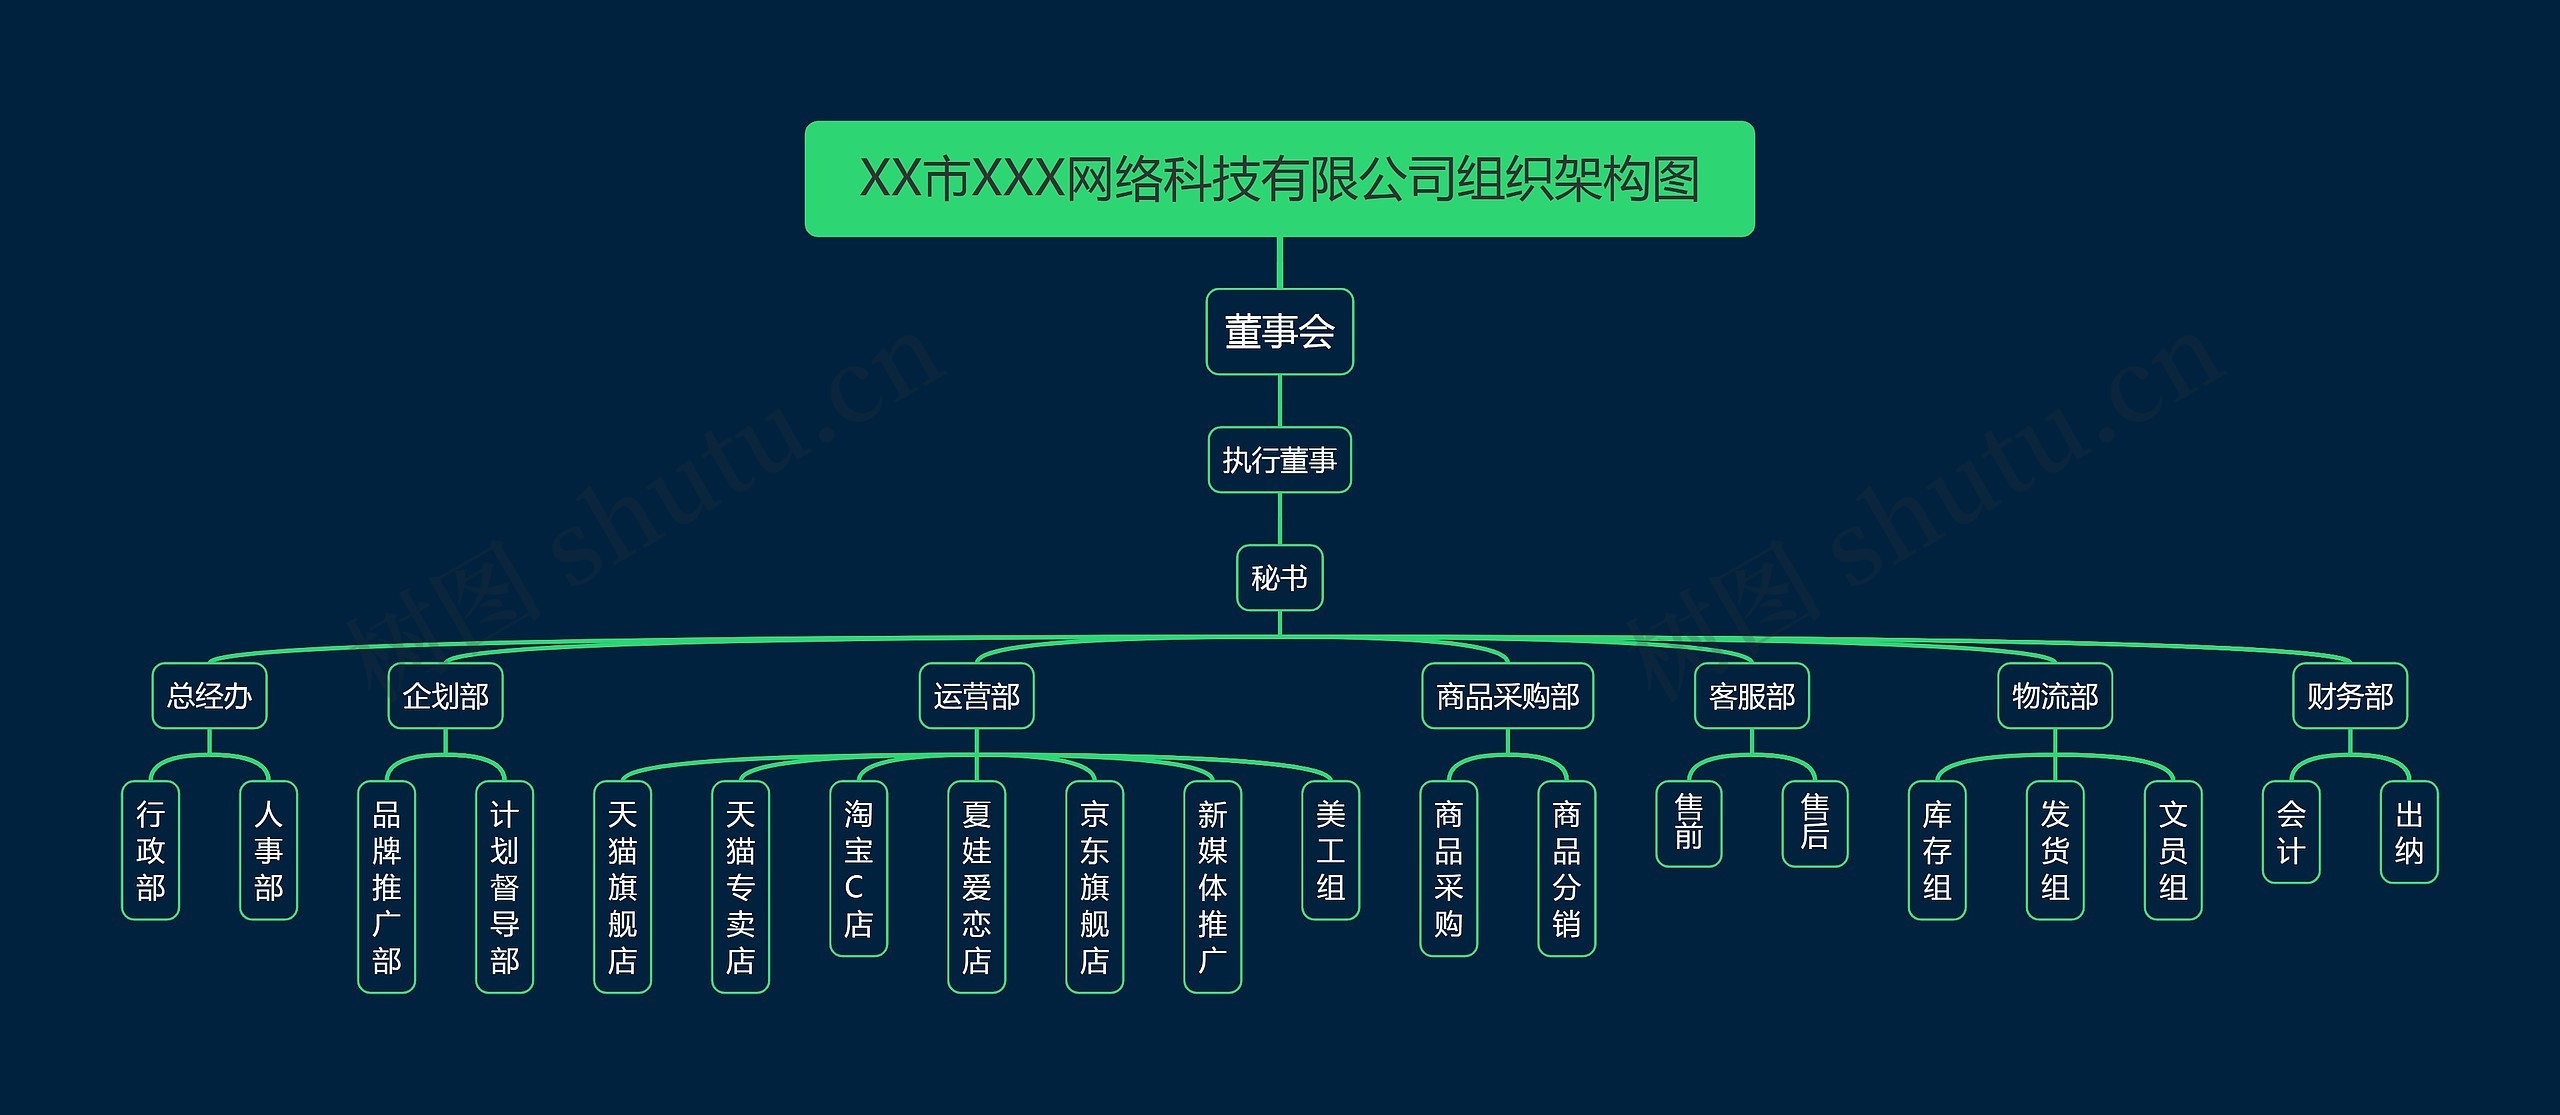 XX市XXX网络科技有限公司组织架构图
思维导图